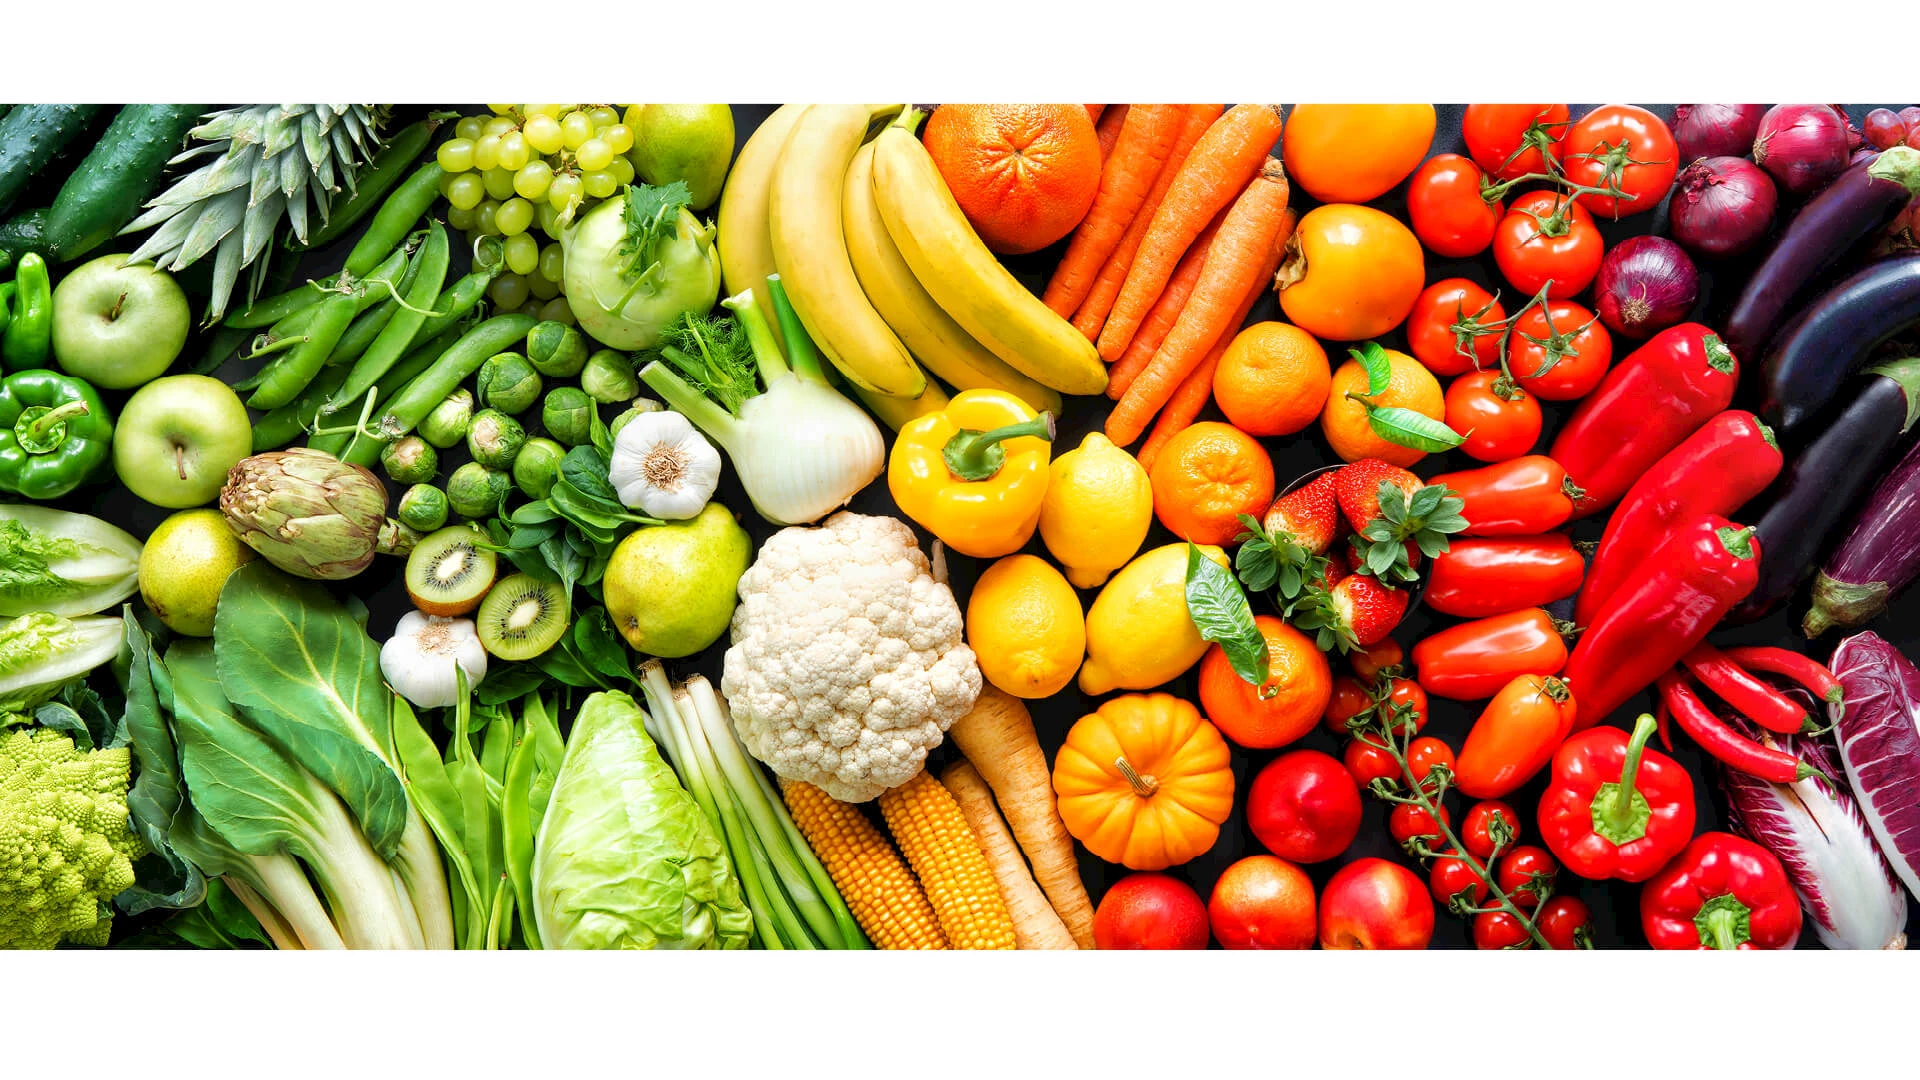 Gemischtes Obst und Gemüse